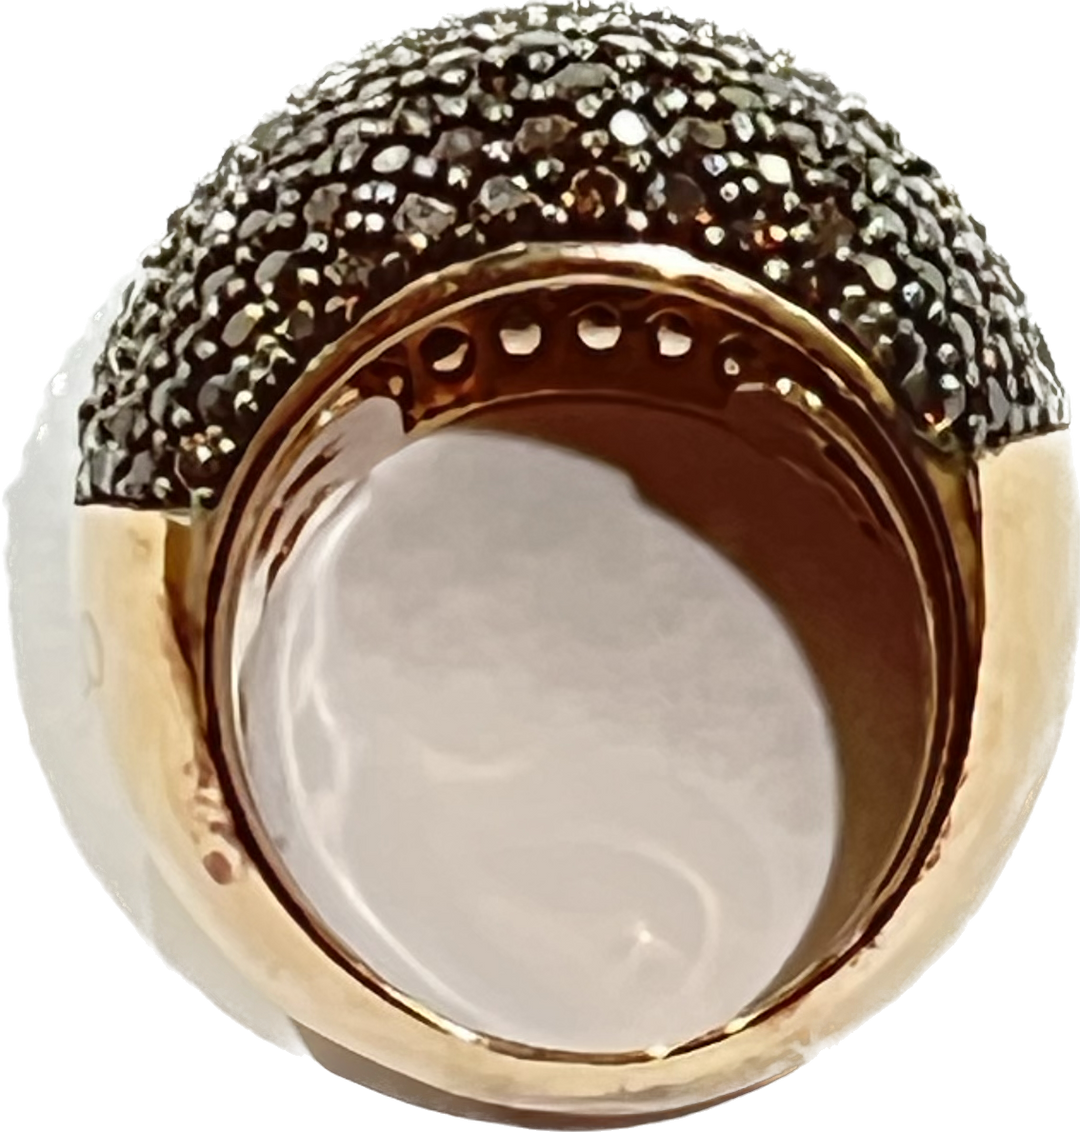 Sidalo Pavè Brown Ring Silver 925 FINE PVD GOLD ROSA CUBIC ZIRKIA M4425-BW